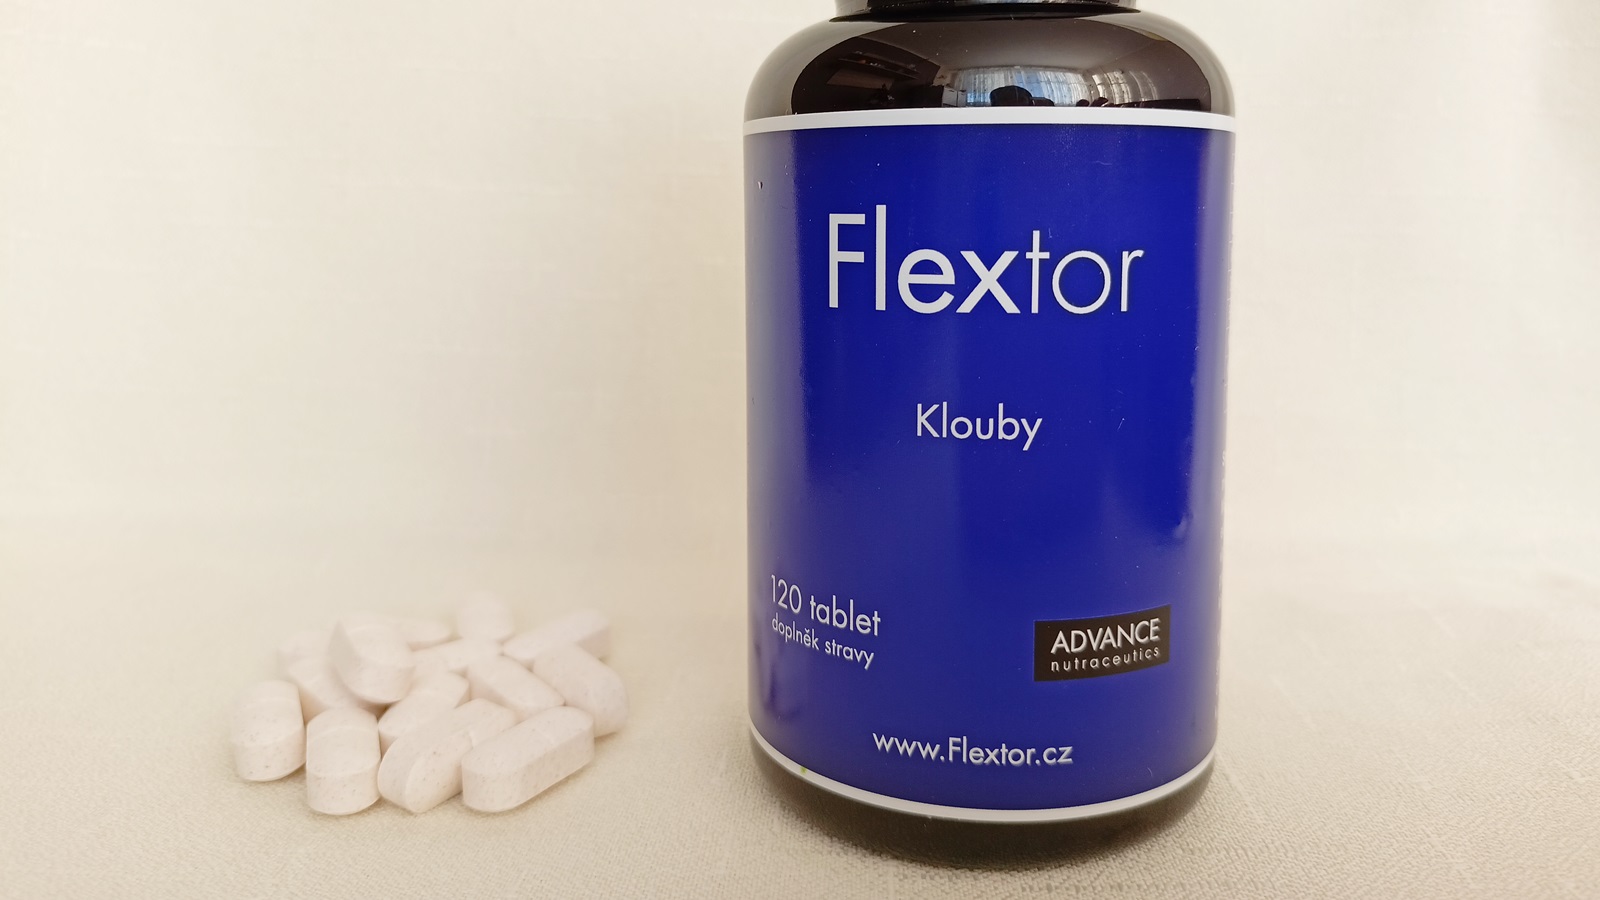 Recenzia: Prípravok na kĺby Flextor od ADVANCE nutraceutics